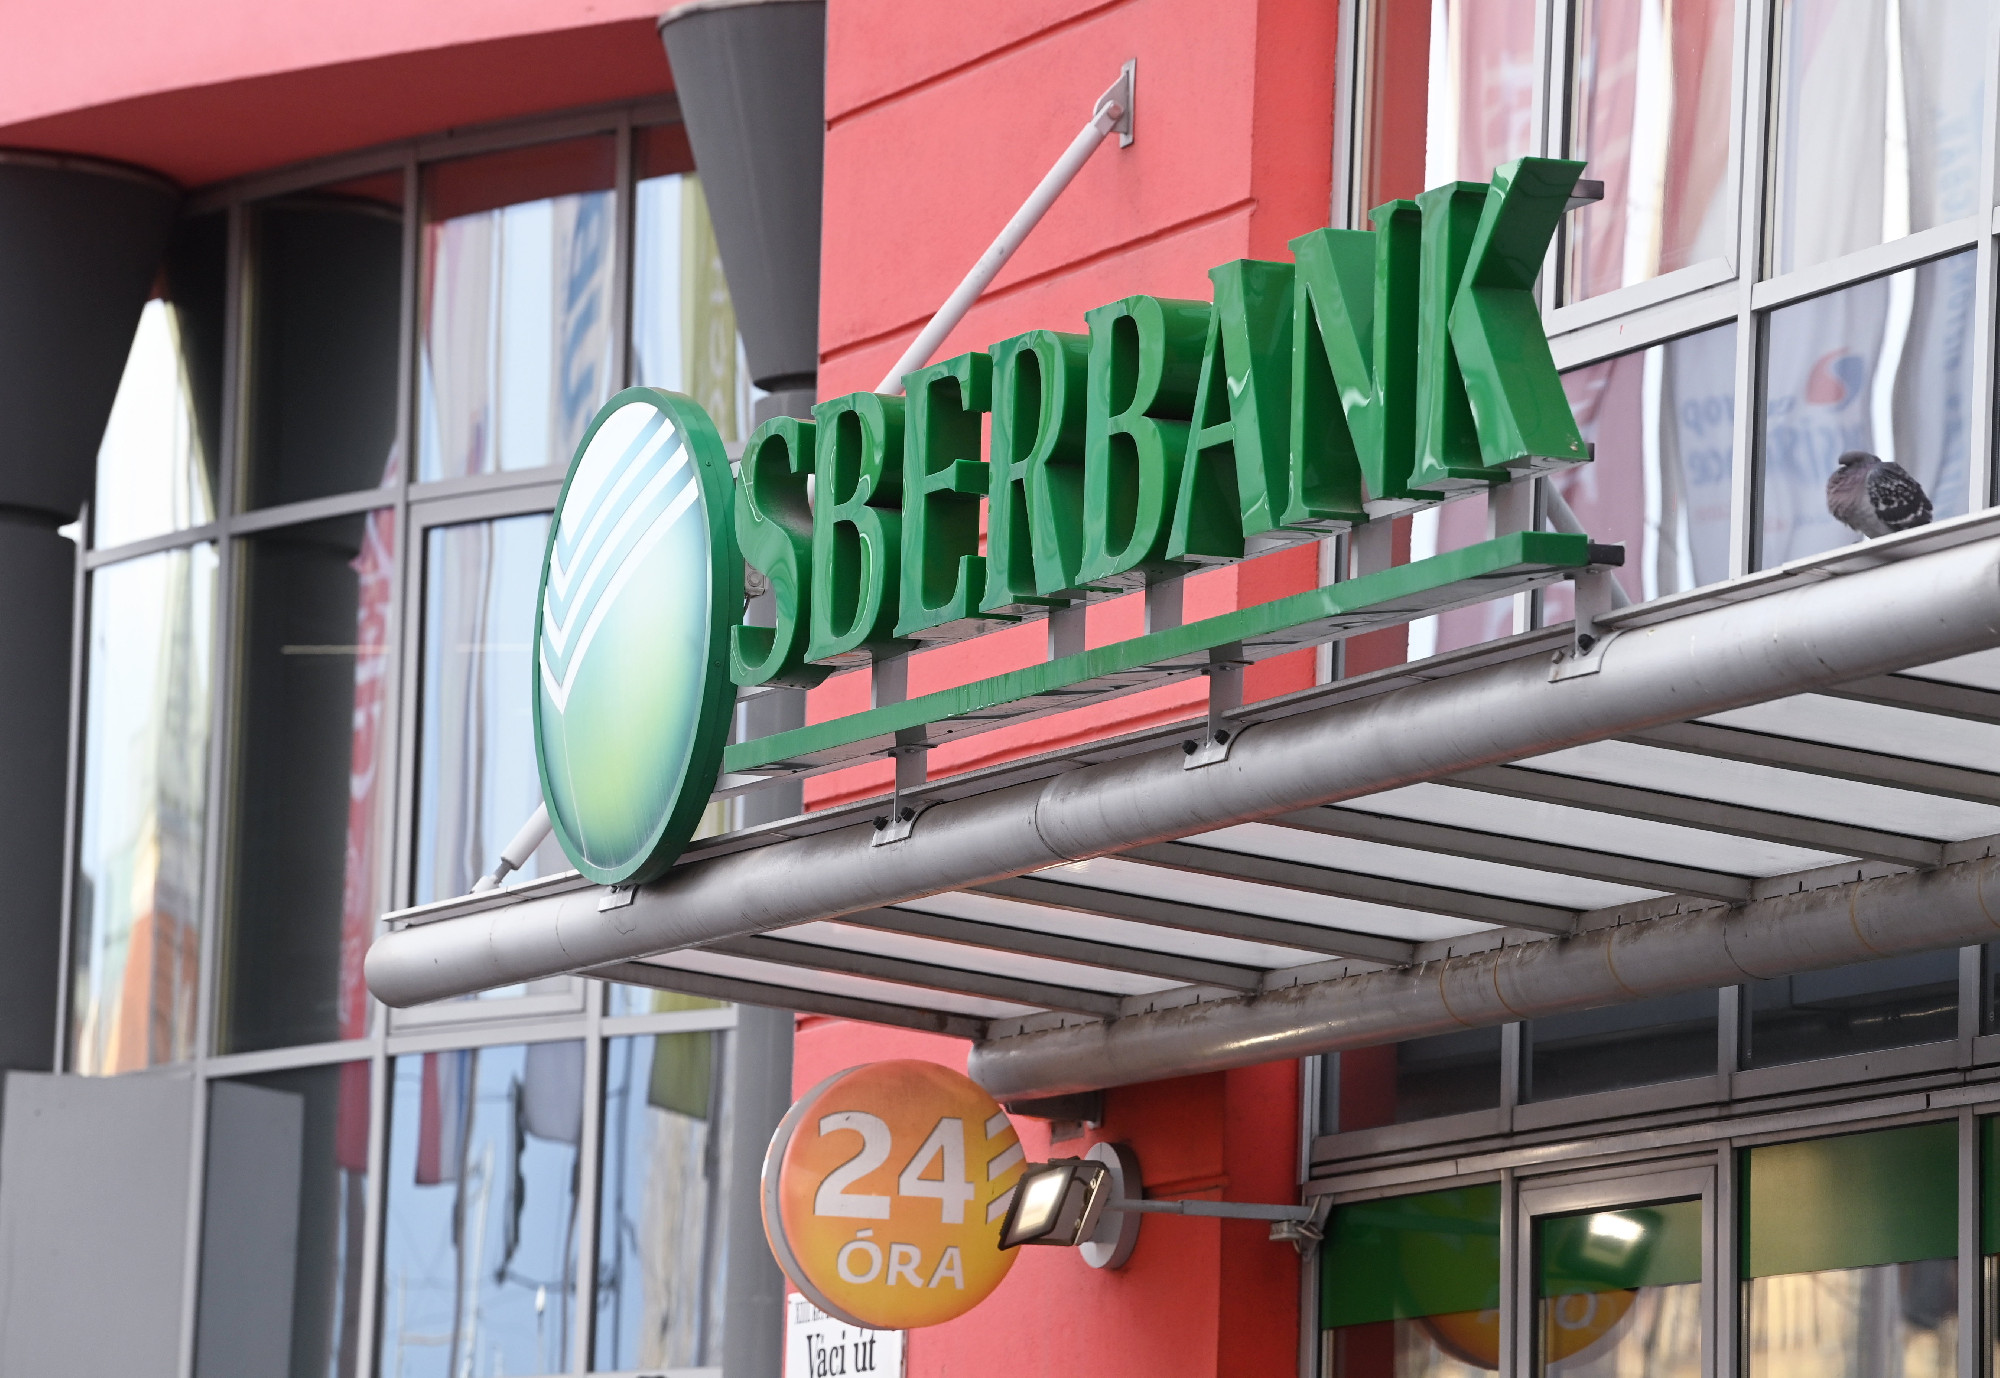 Megkezdődött a Sberbank-ügyfelek kártalanítása – íme a részletek